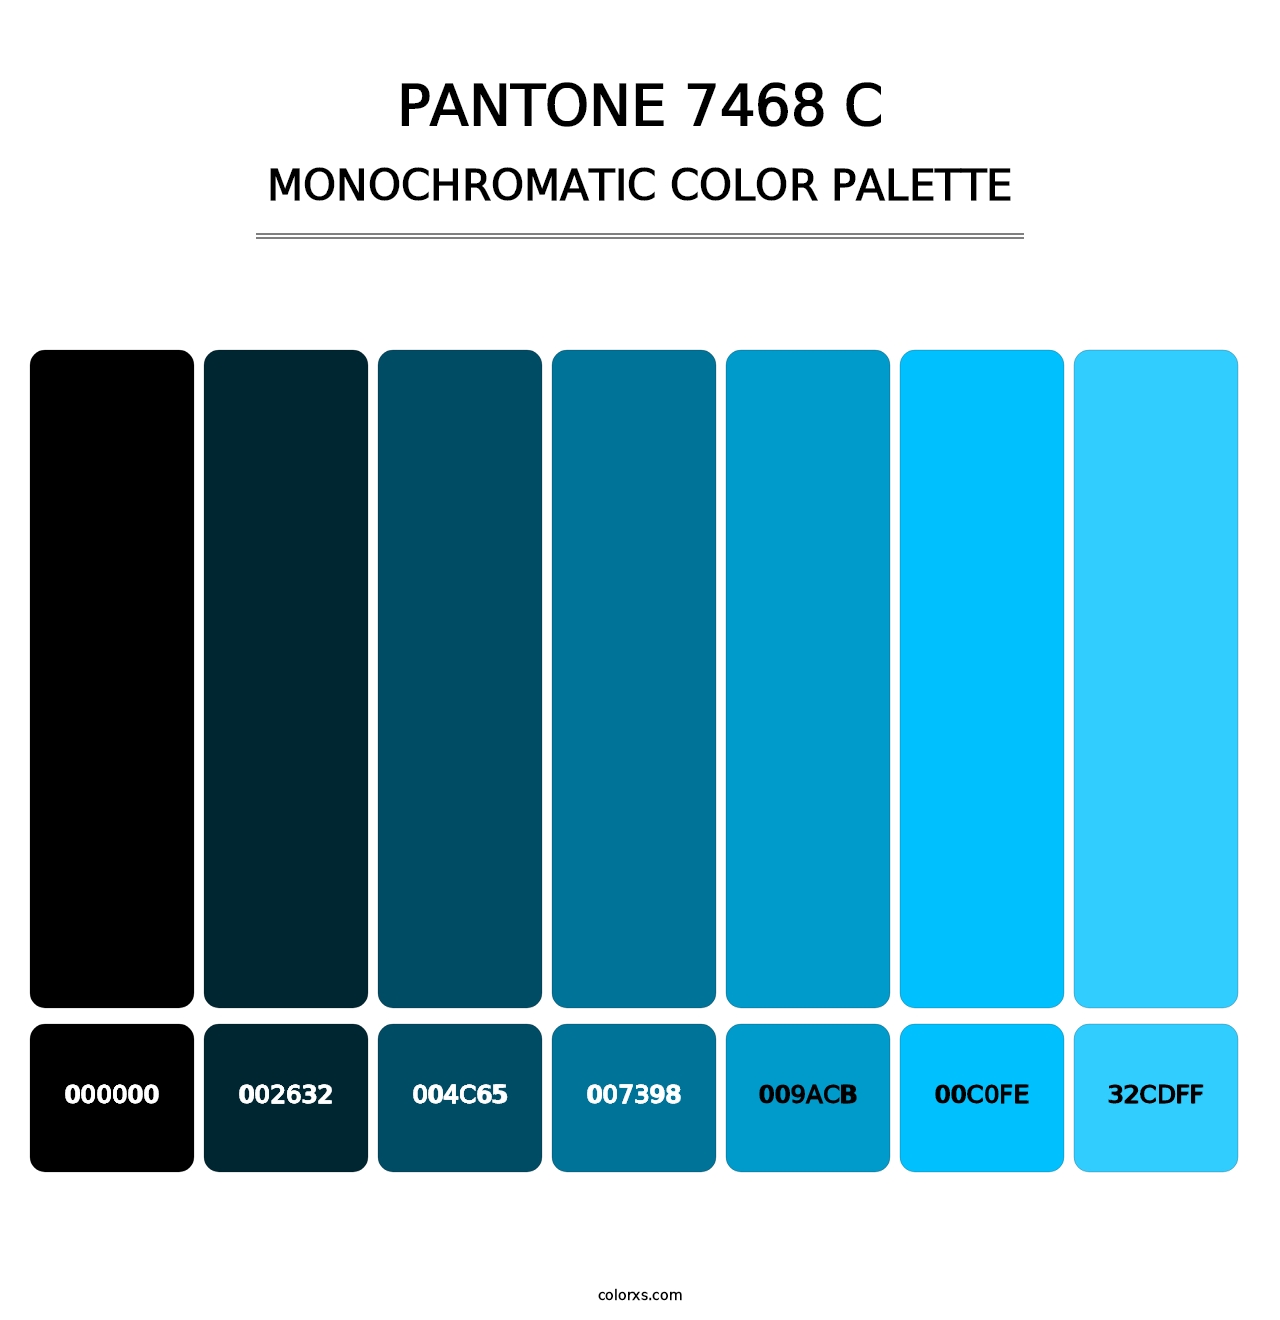 PANTONE 7468 C - Monochromatic Color Palette